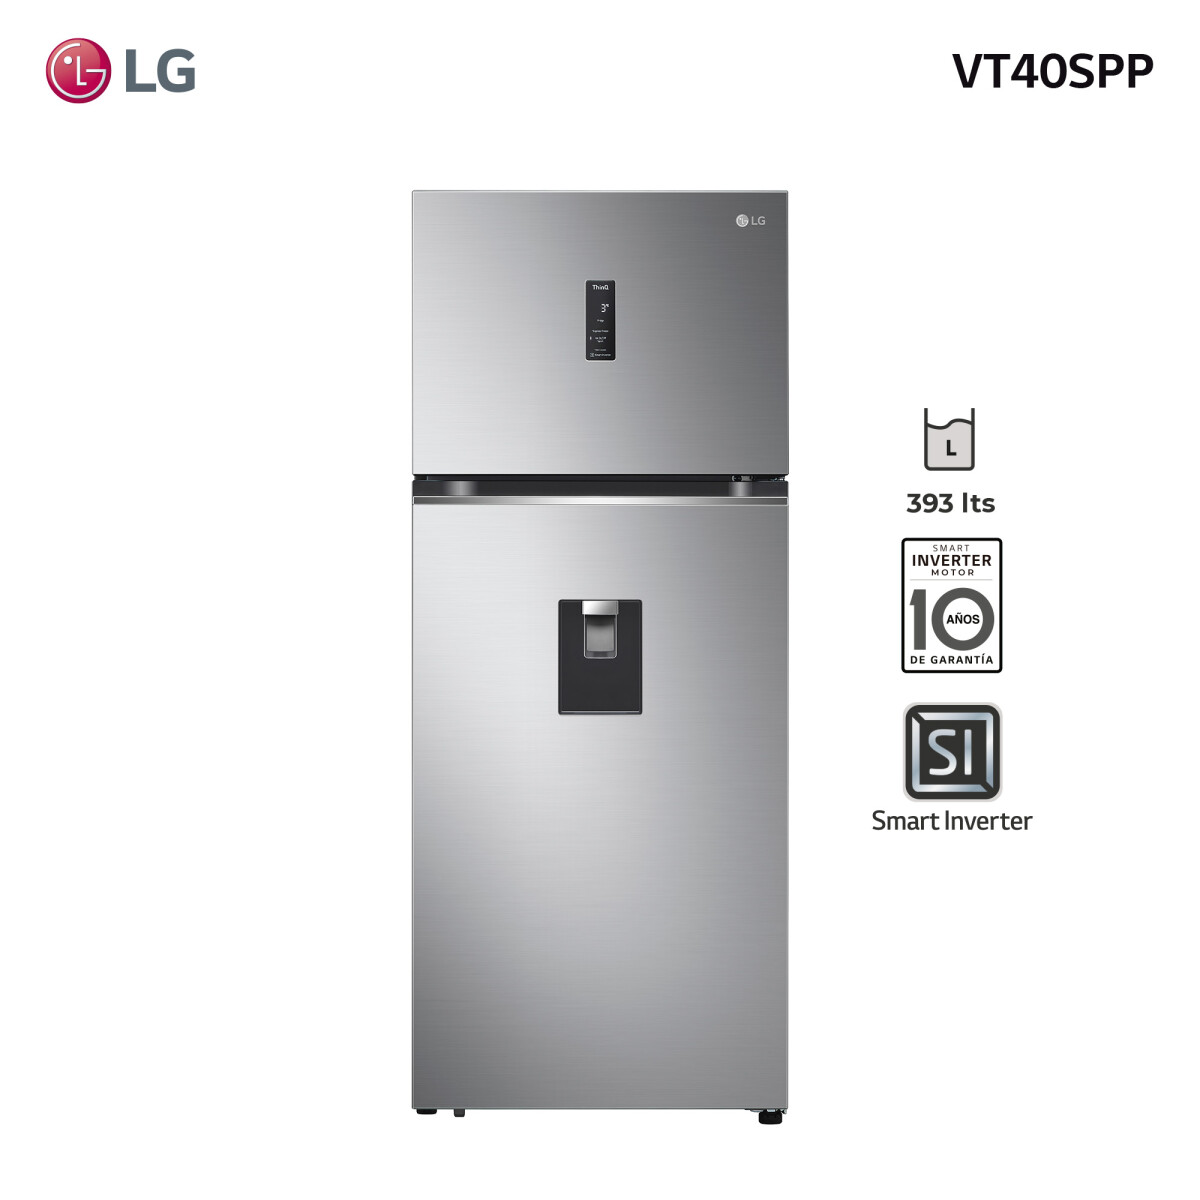 Refrigerador inverter 393L VT40SPP LG 